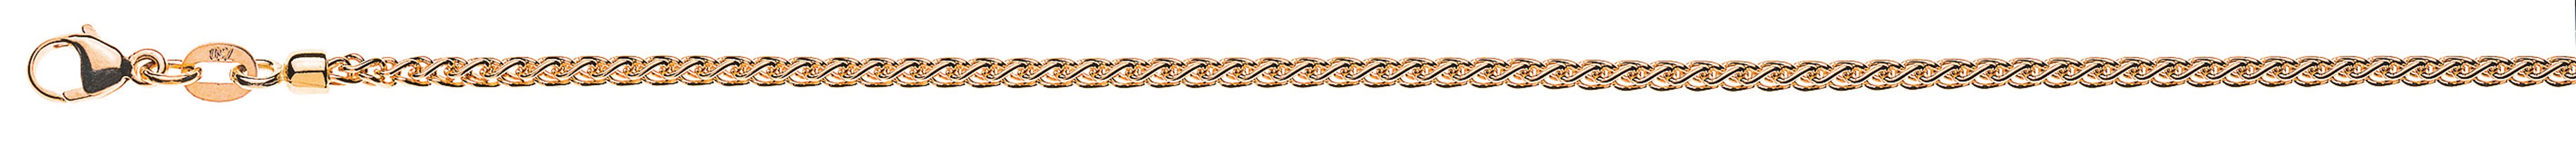 AURONOS Prestige Necklace rose gold 18K cable chain 42cm 2.15mm